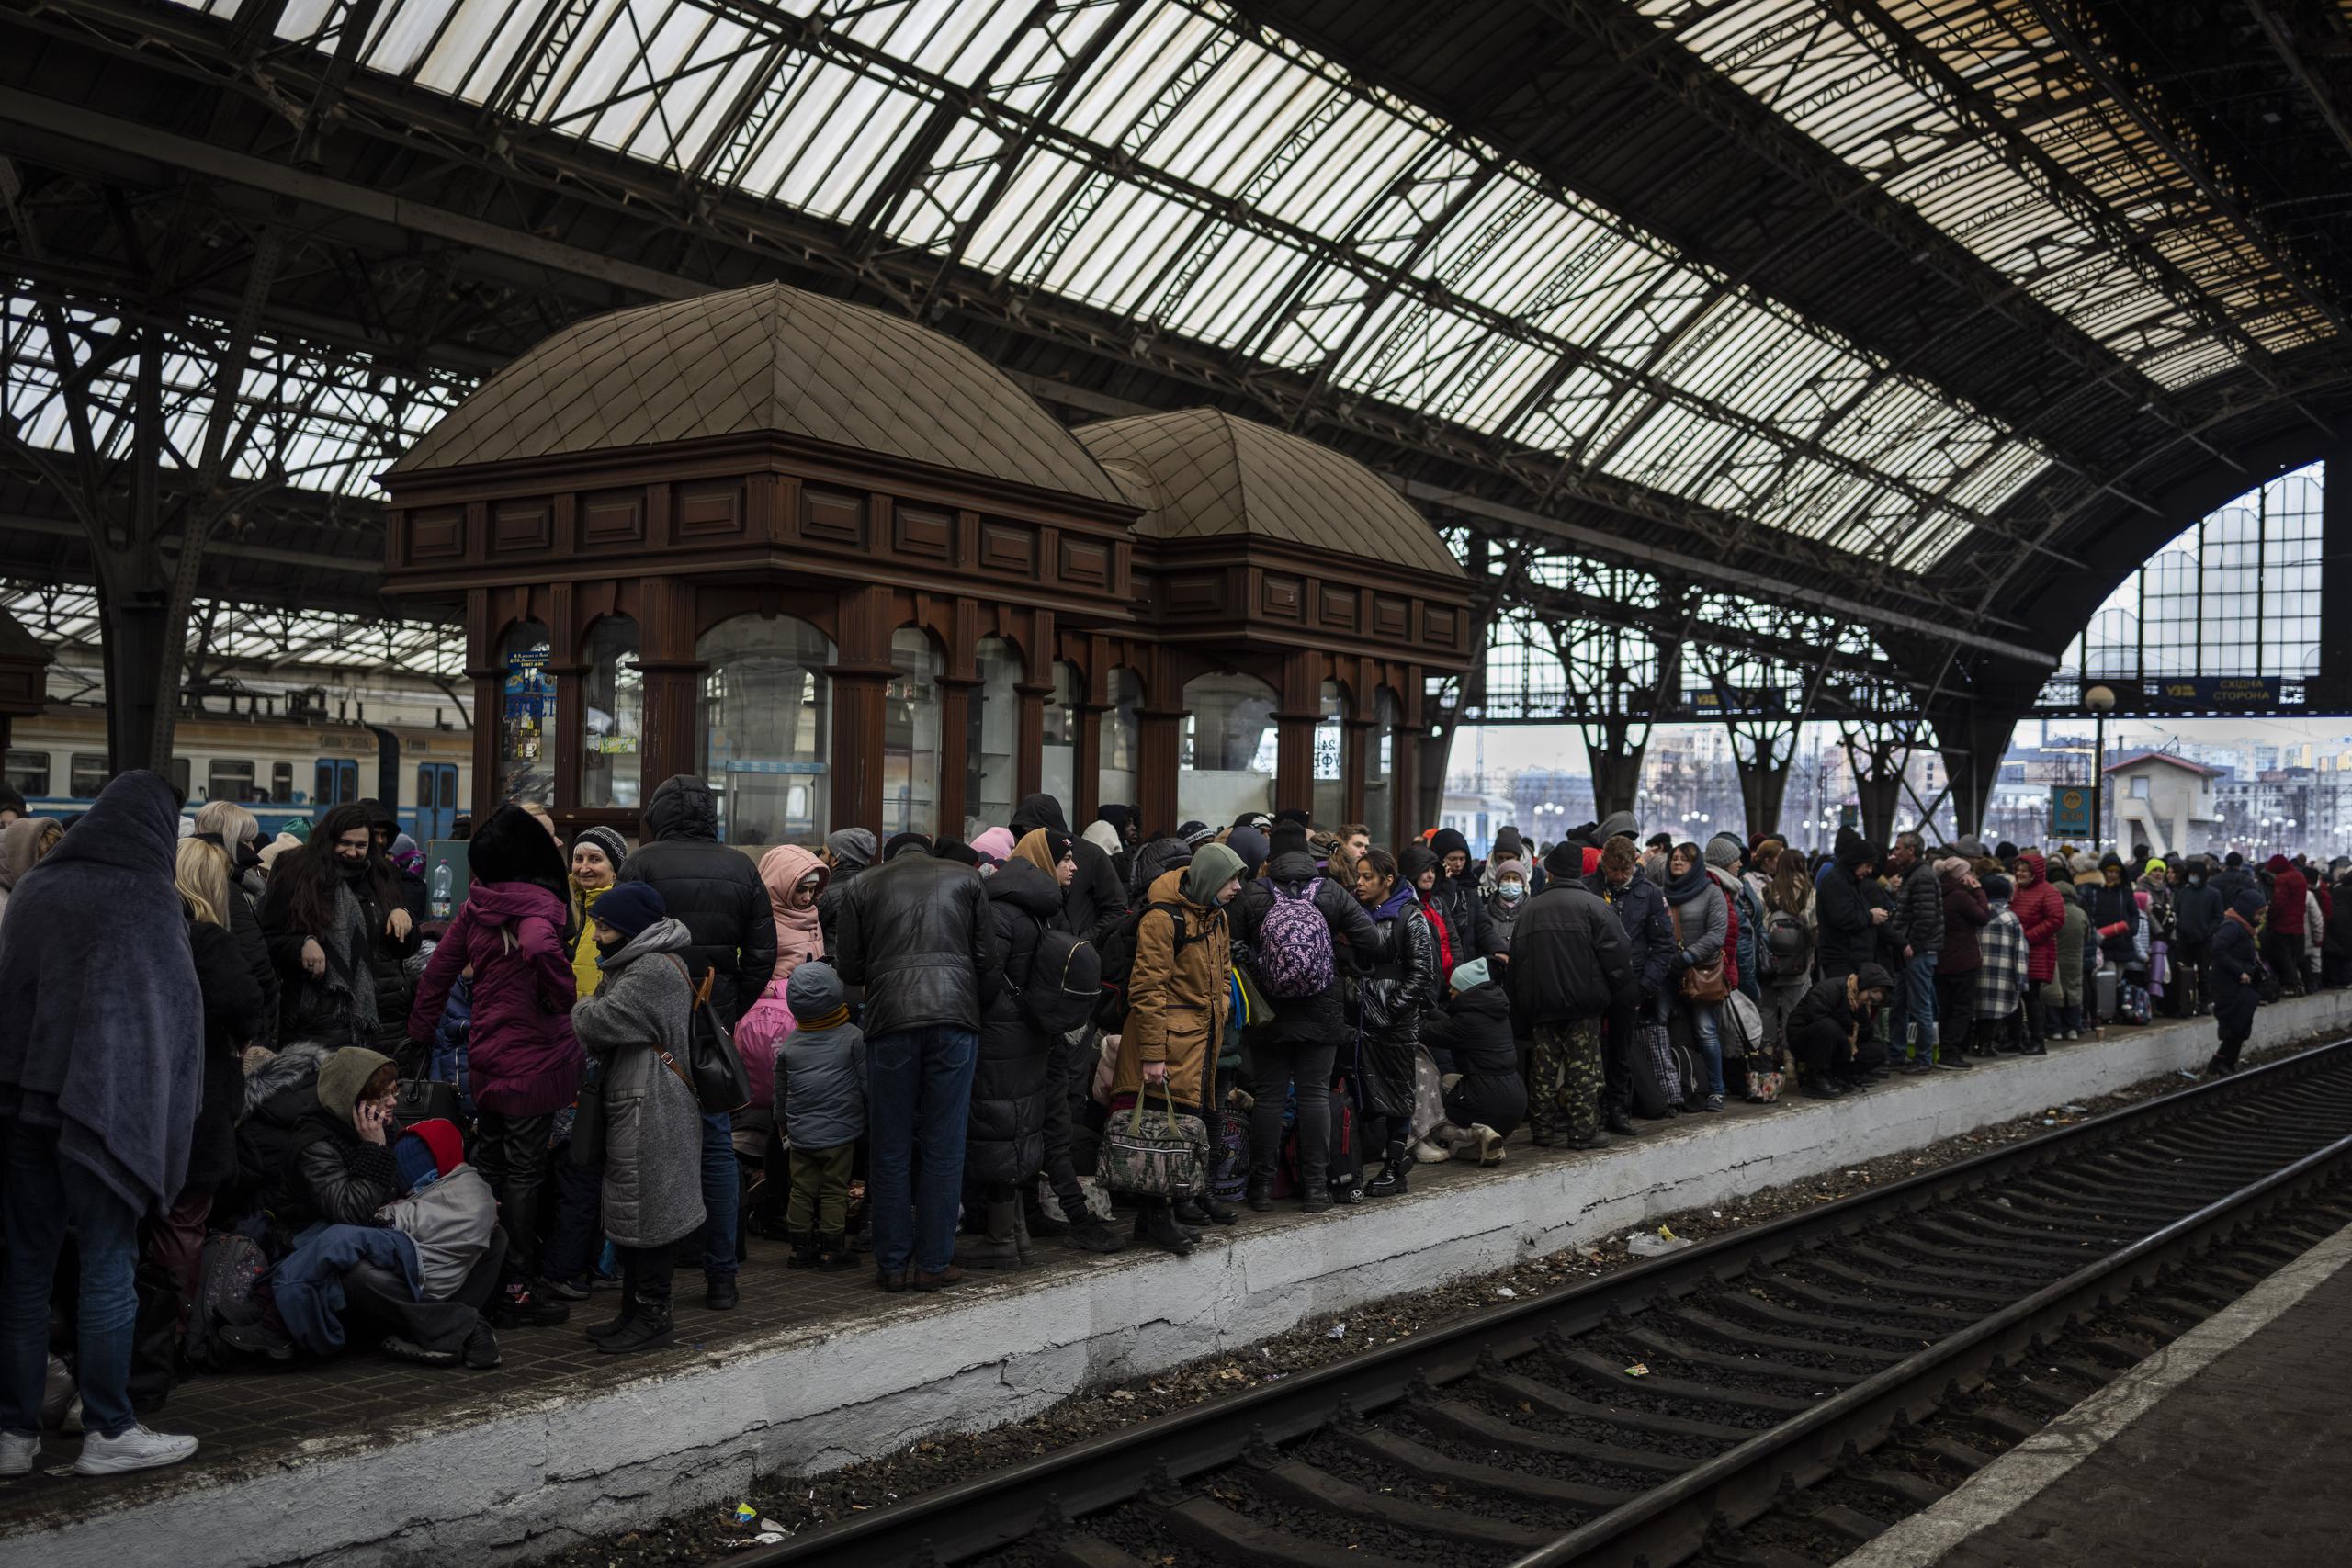 Los pasajeros esperan en el andén dentro de la estación de tren de Lviv.